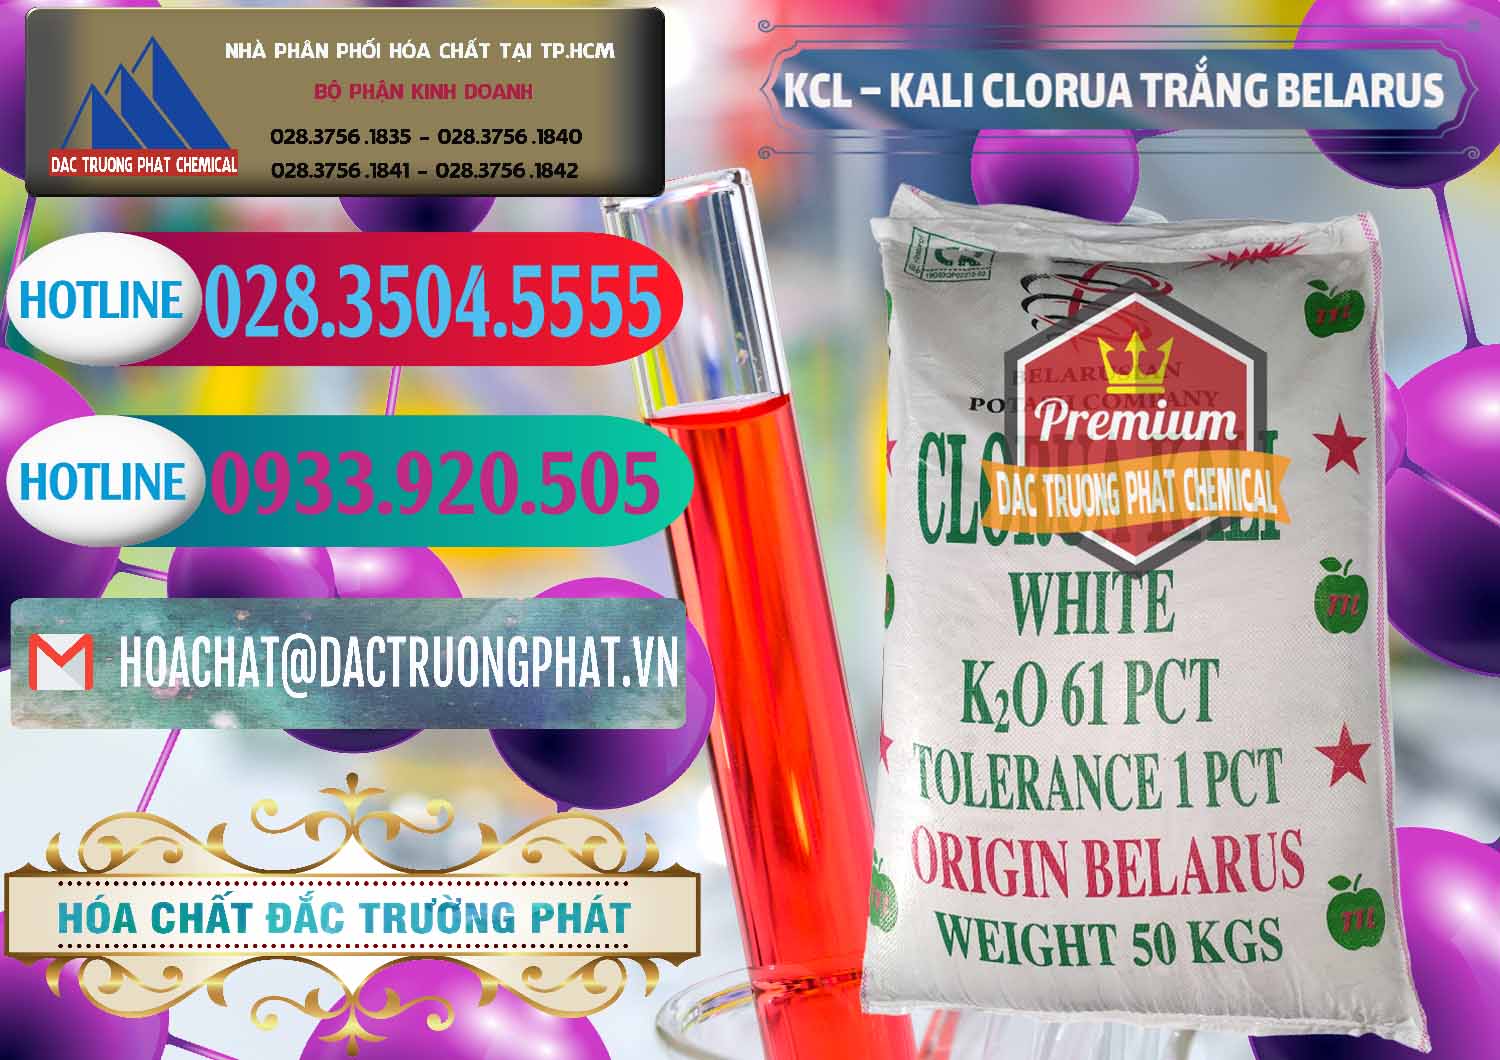 Chuyên nhập khẩu & bán KCL – Kali Clorua Trắng Belarus - 0085 - Chuyên cung cấp ( nhập khẩu ) hóa chất tại TP.HCM - truongphat.vn